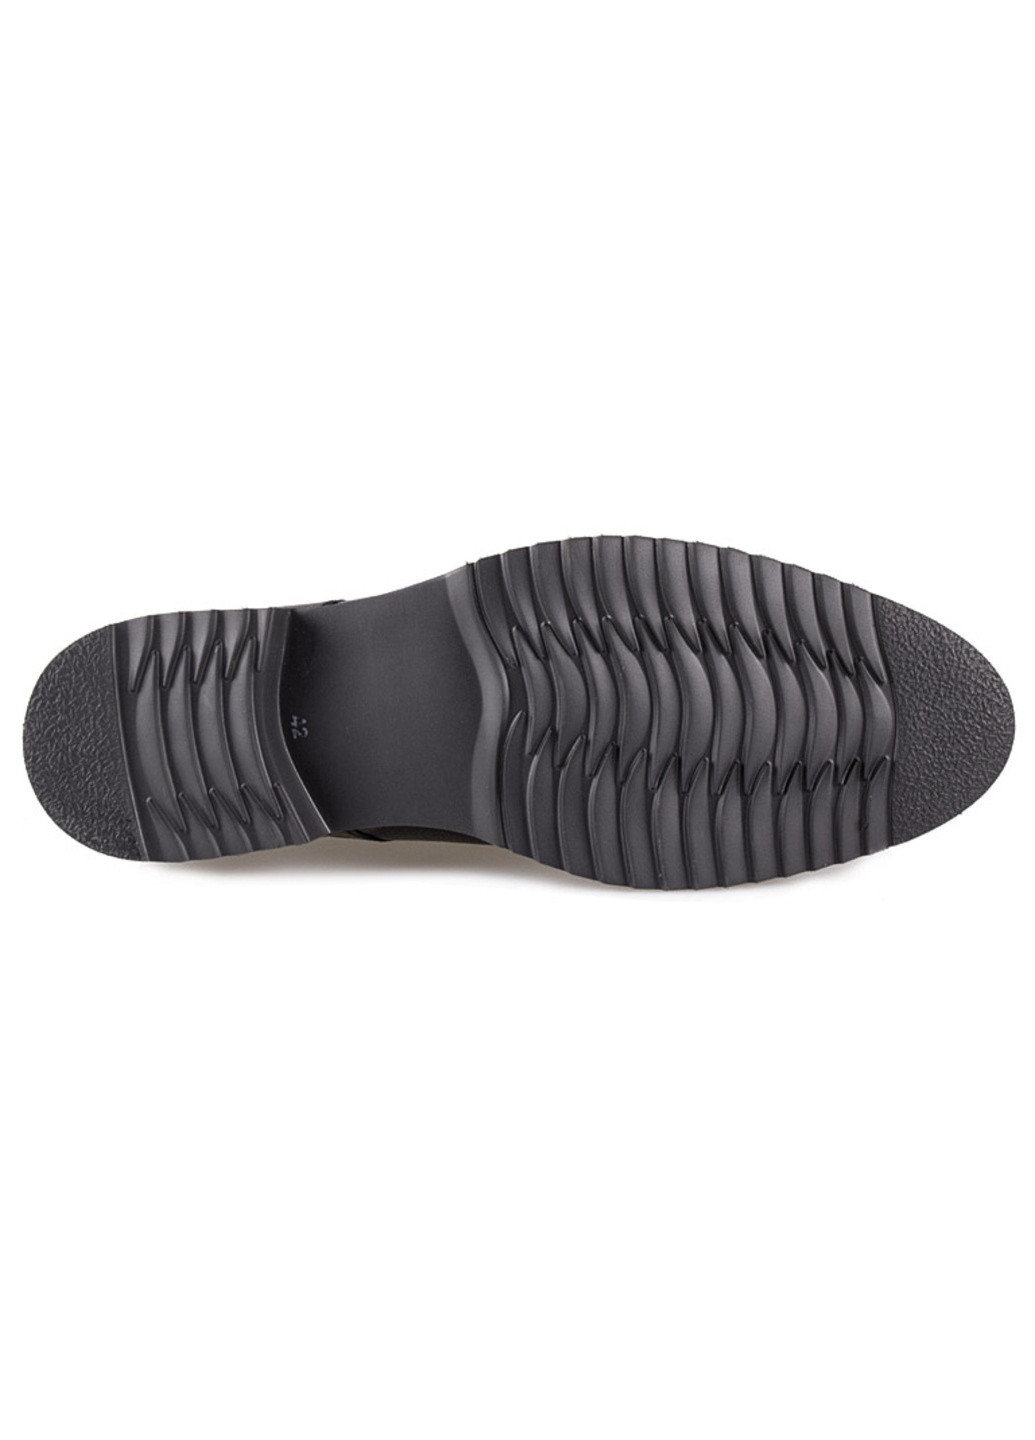 Черные классические туфли мужские бренда 9401291_(16) Mida на шнурках